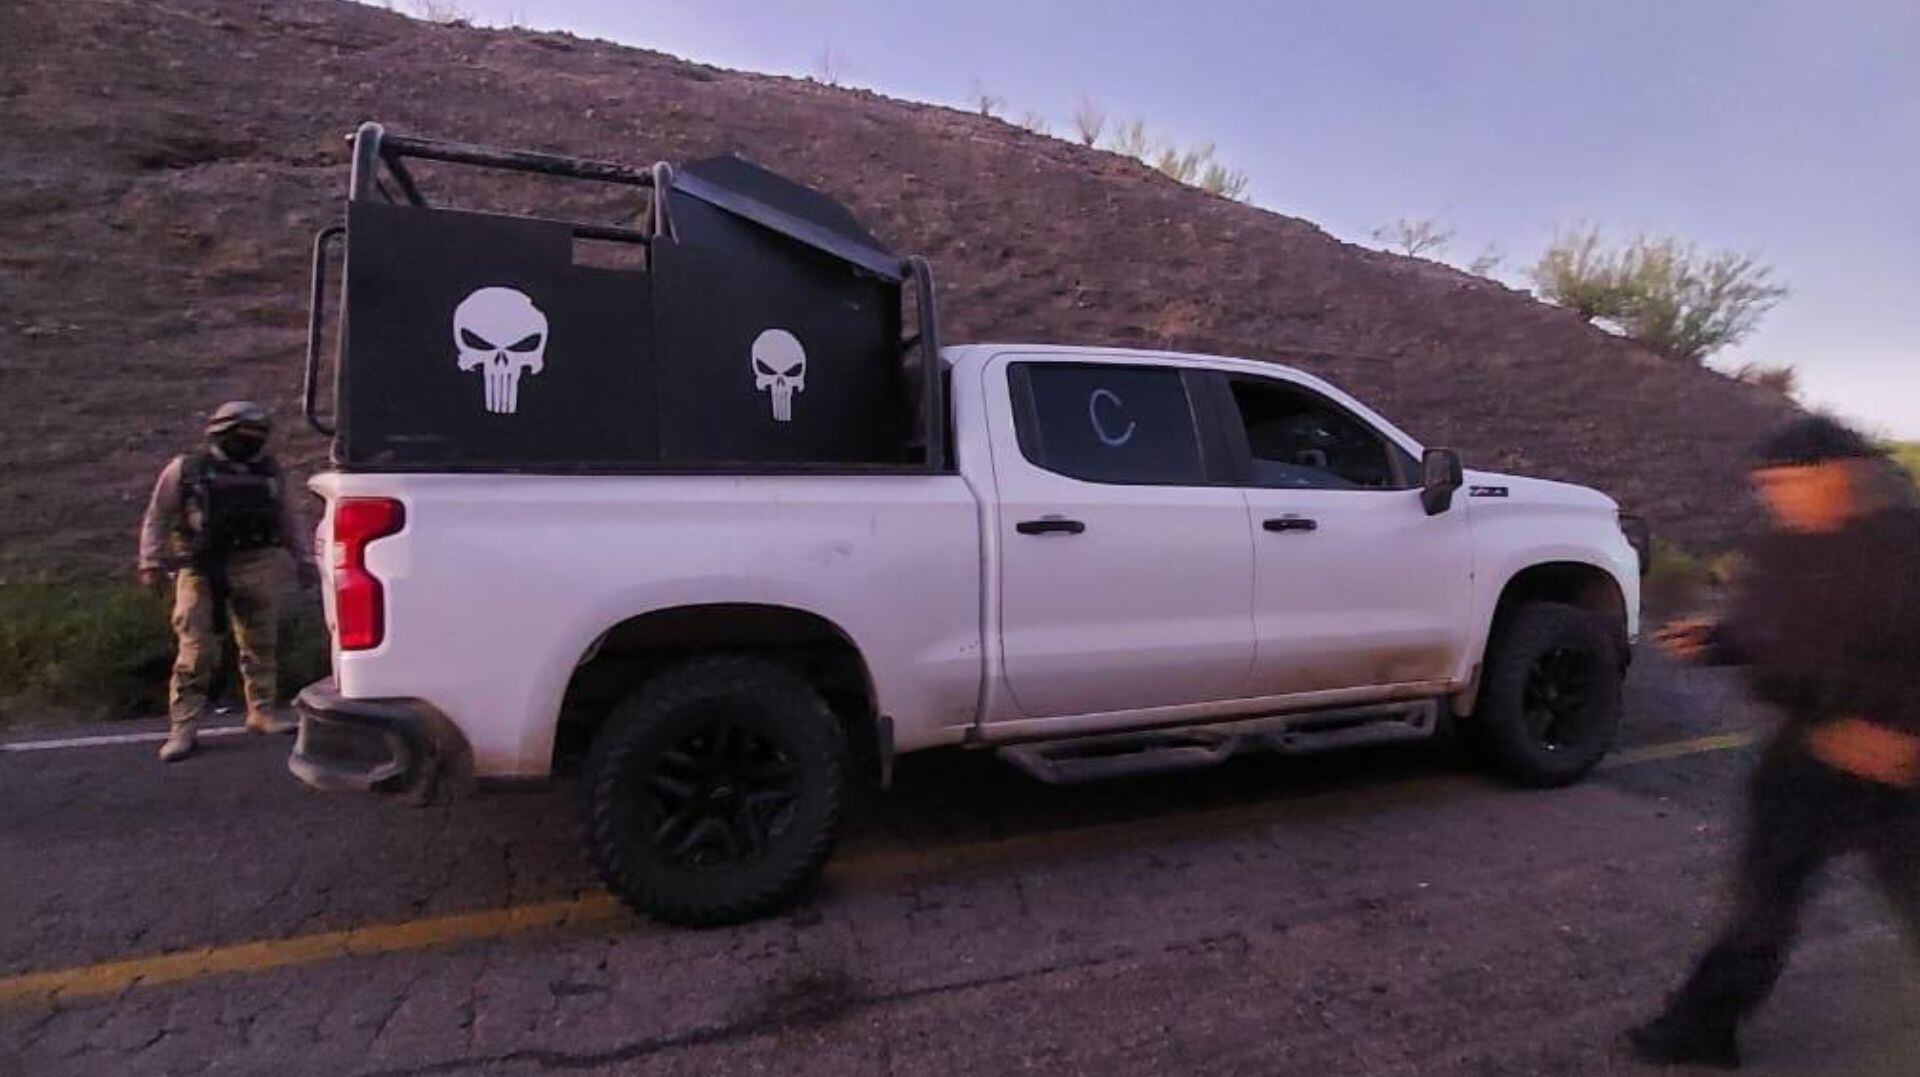 Camioneta usada por sicarios de Los Fantasmas(Foto: X/@sonorainformat)